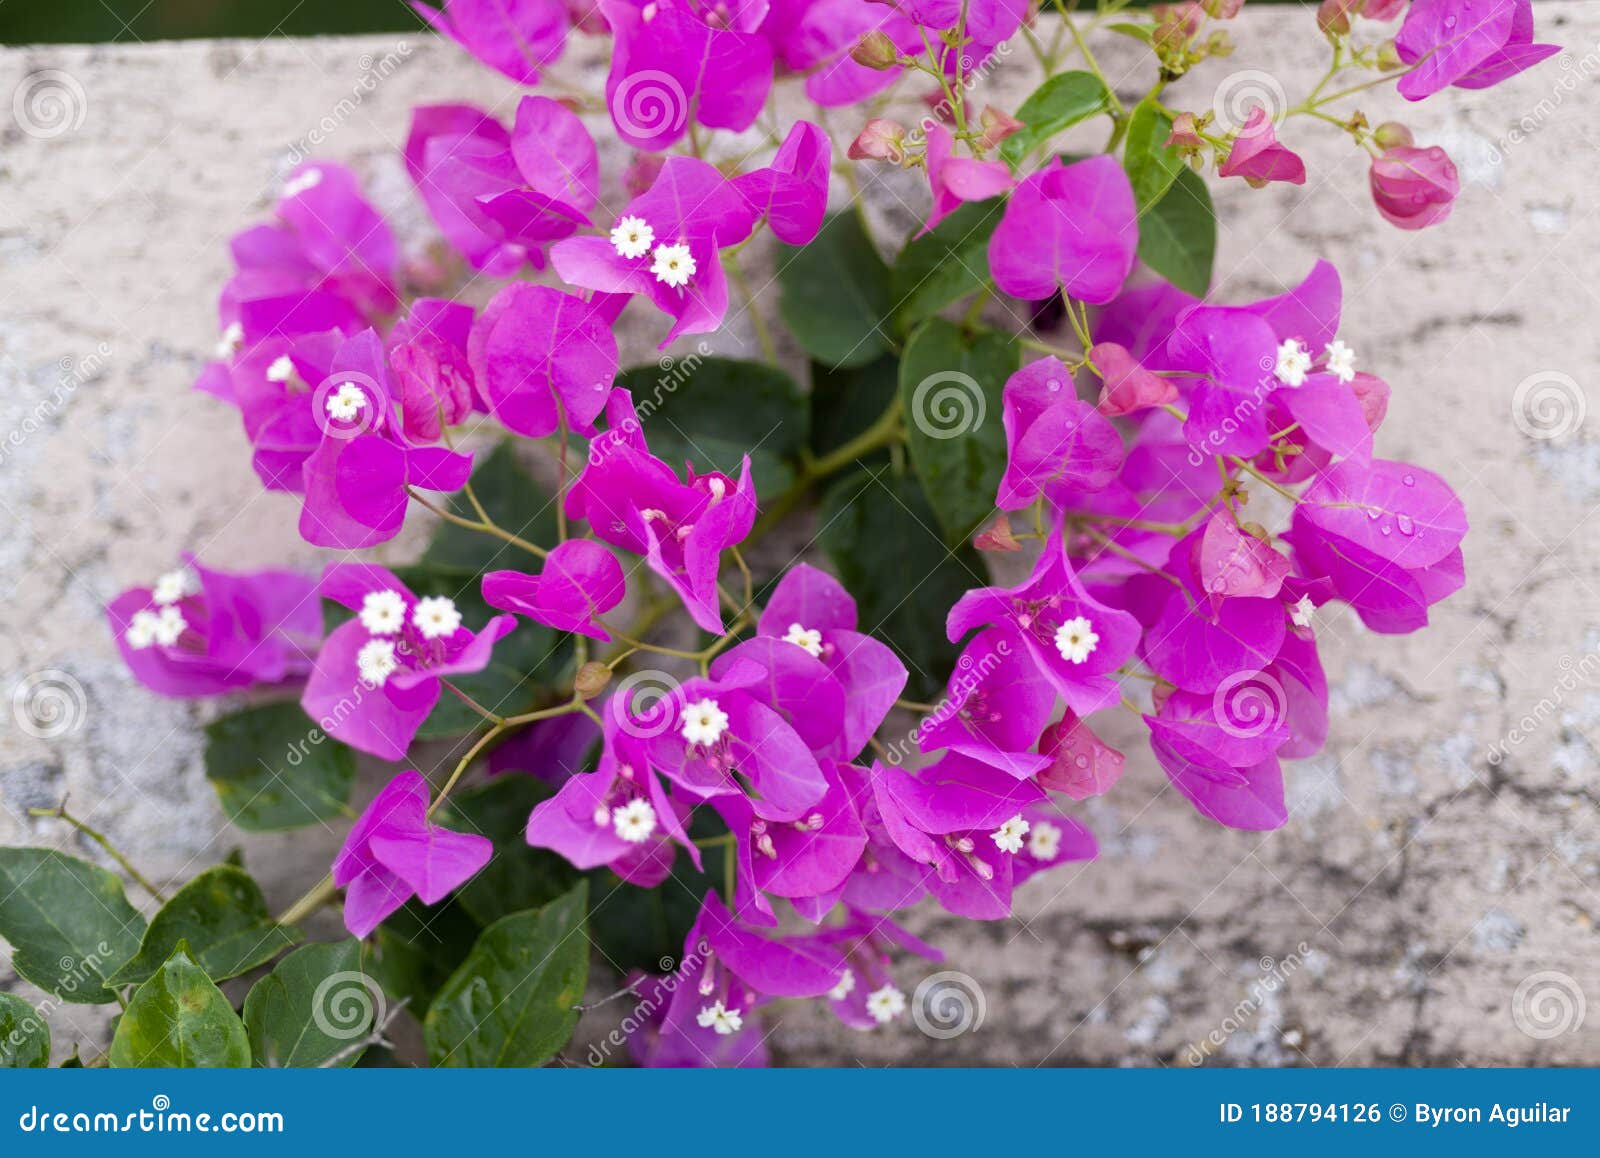 Bougainvillea Flower in Guatemala, Buganvilla. Central America Stock Photo  - Image of close, agricultural: 188794126